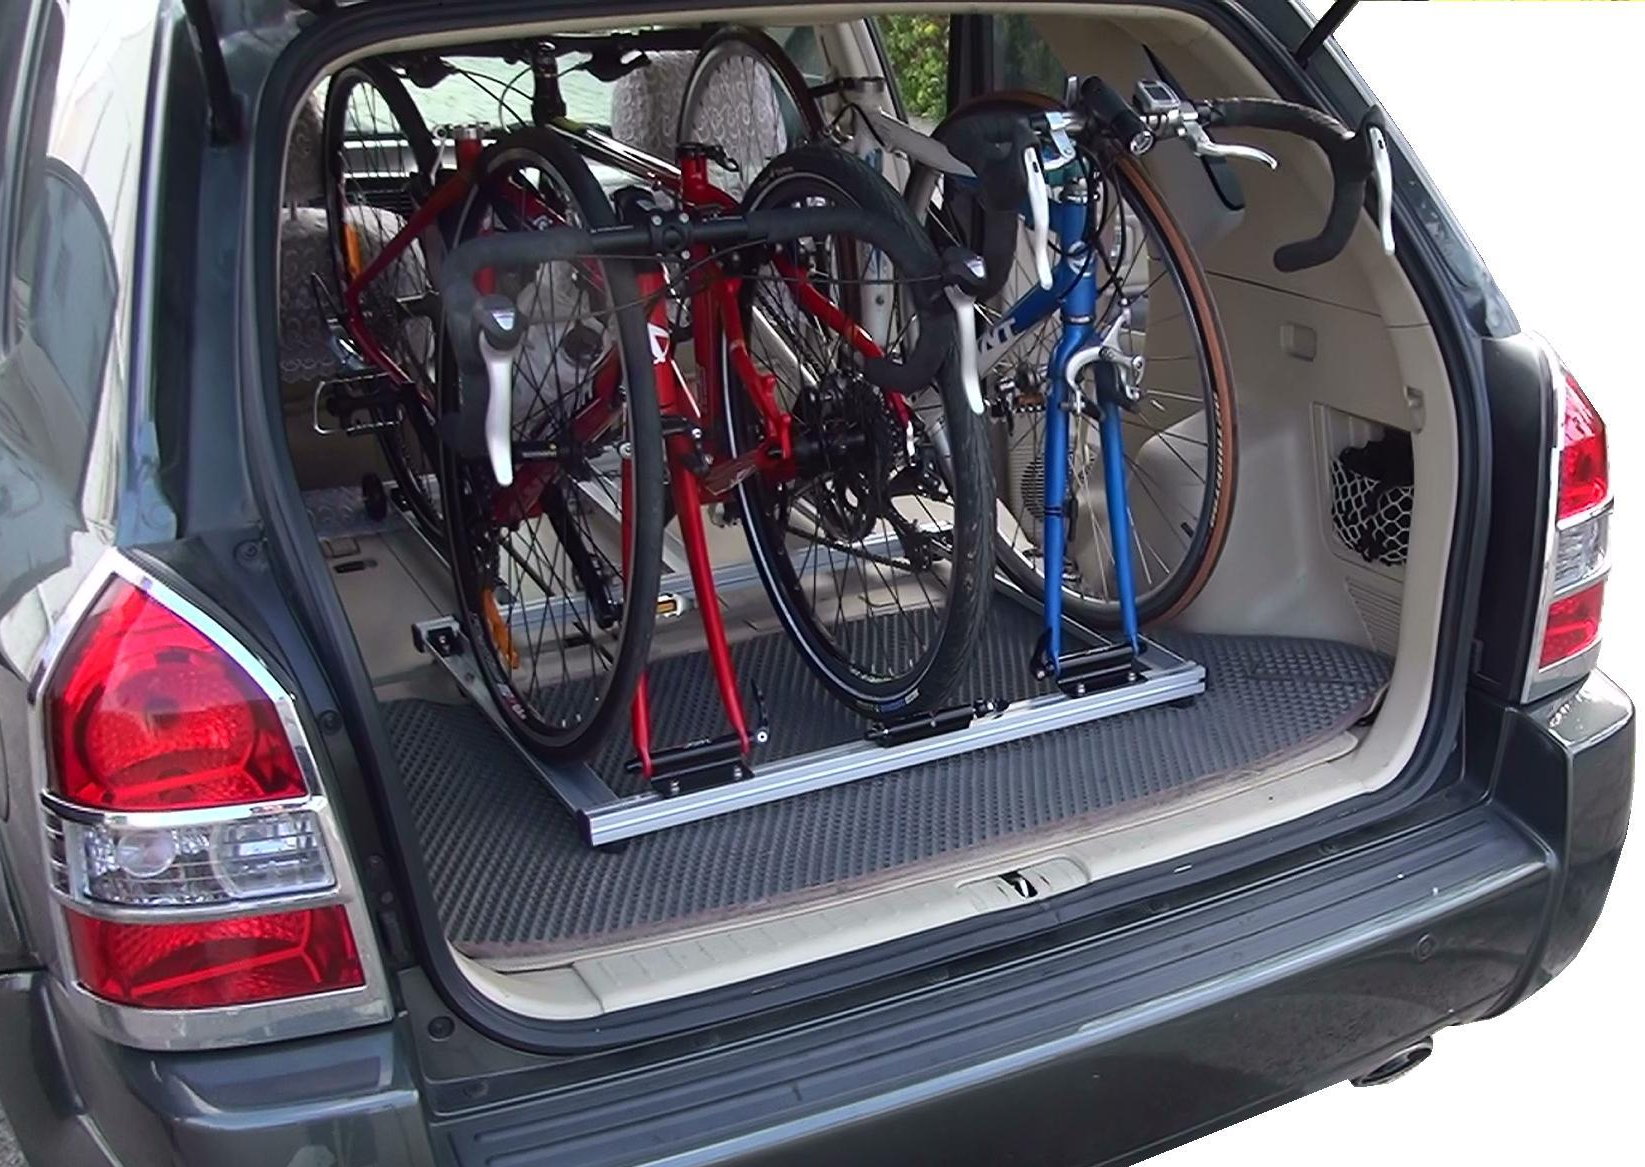 A kerékpárok biztonságosan az autó belső terében szállíthatók...